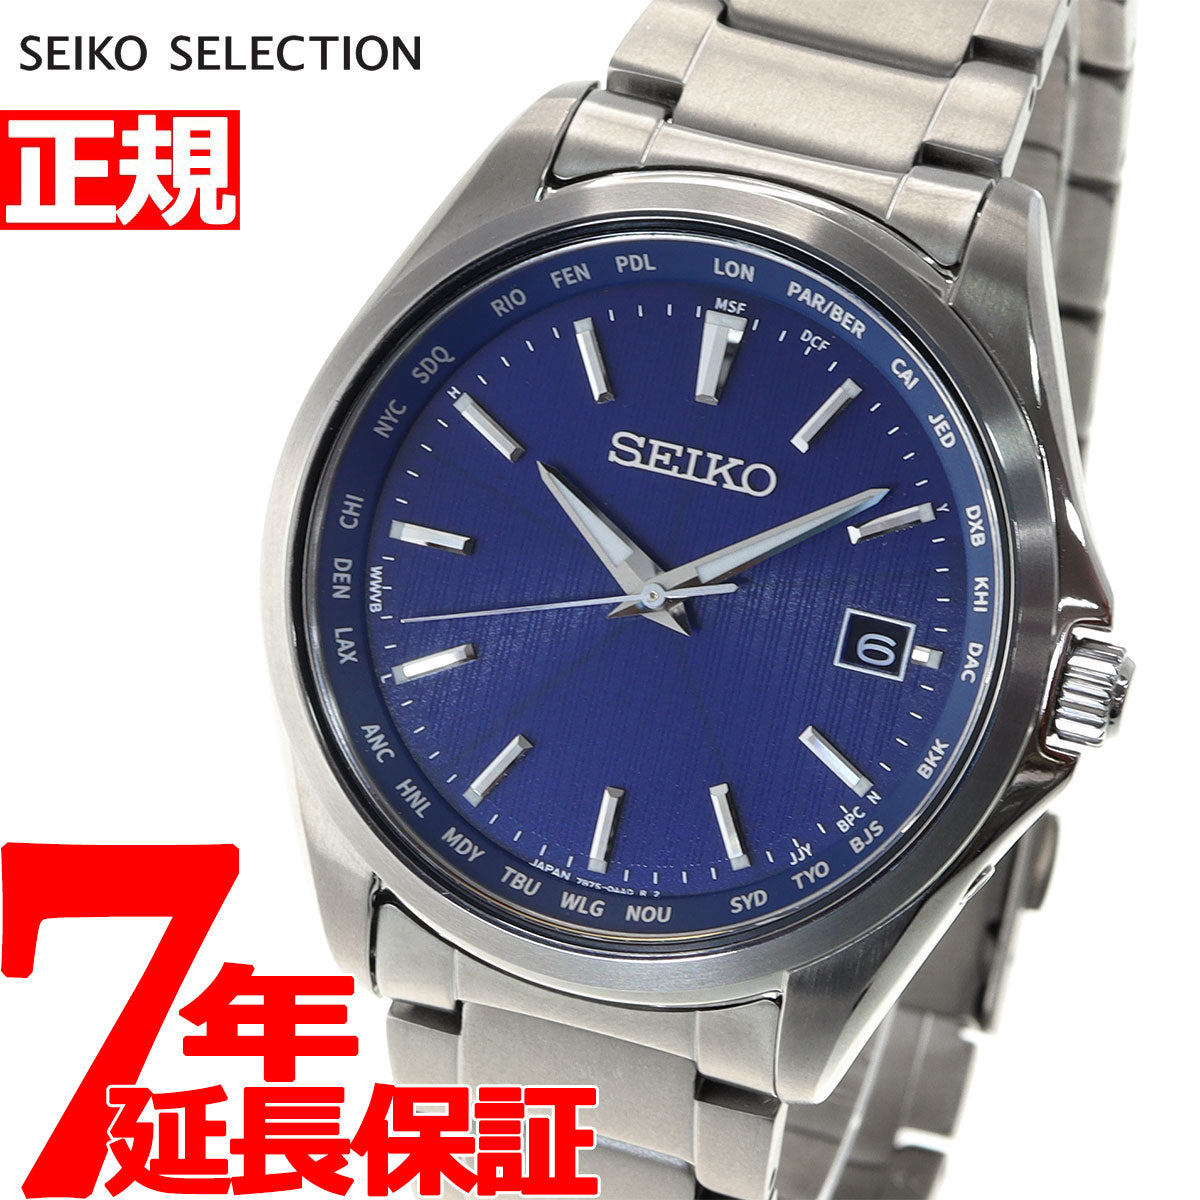 セイコー セレクション SEIKO SELECTION 電波 ソーラー 電波時計 腕時計 メンズ SBTM289 – neel selectshop